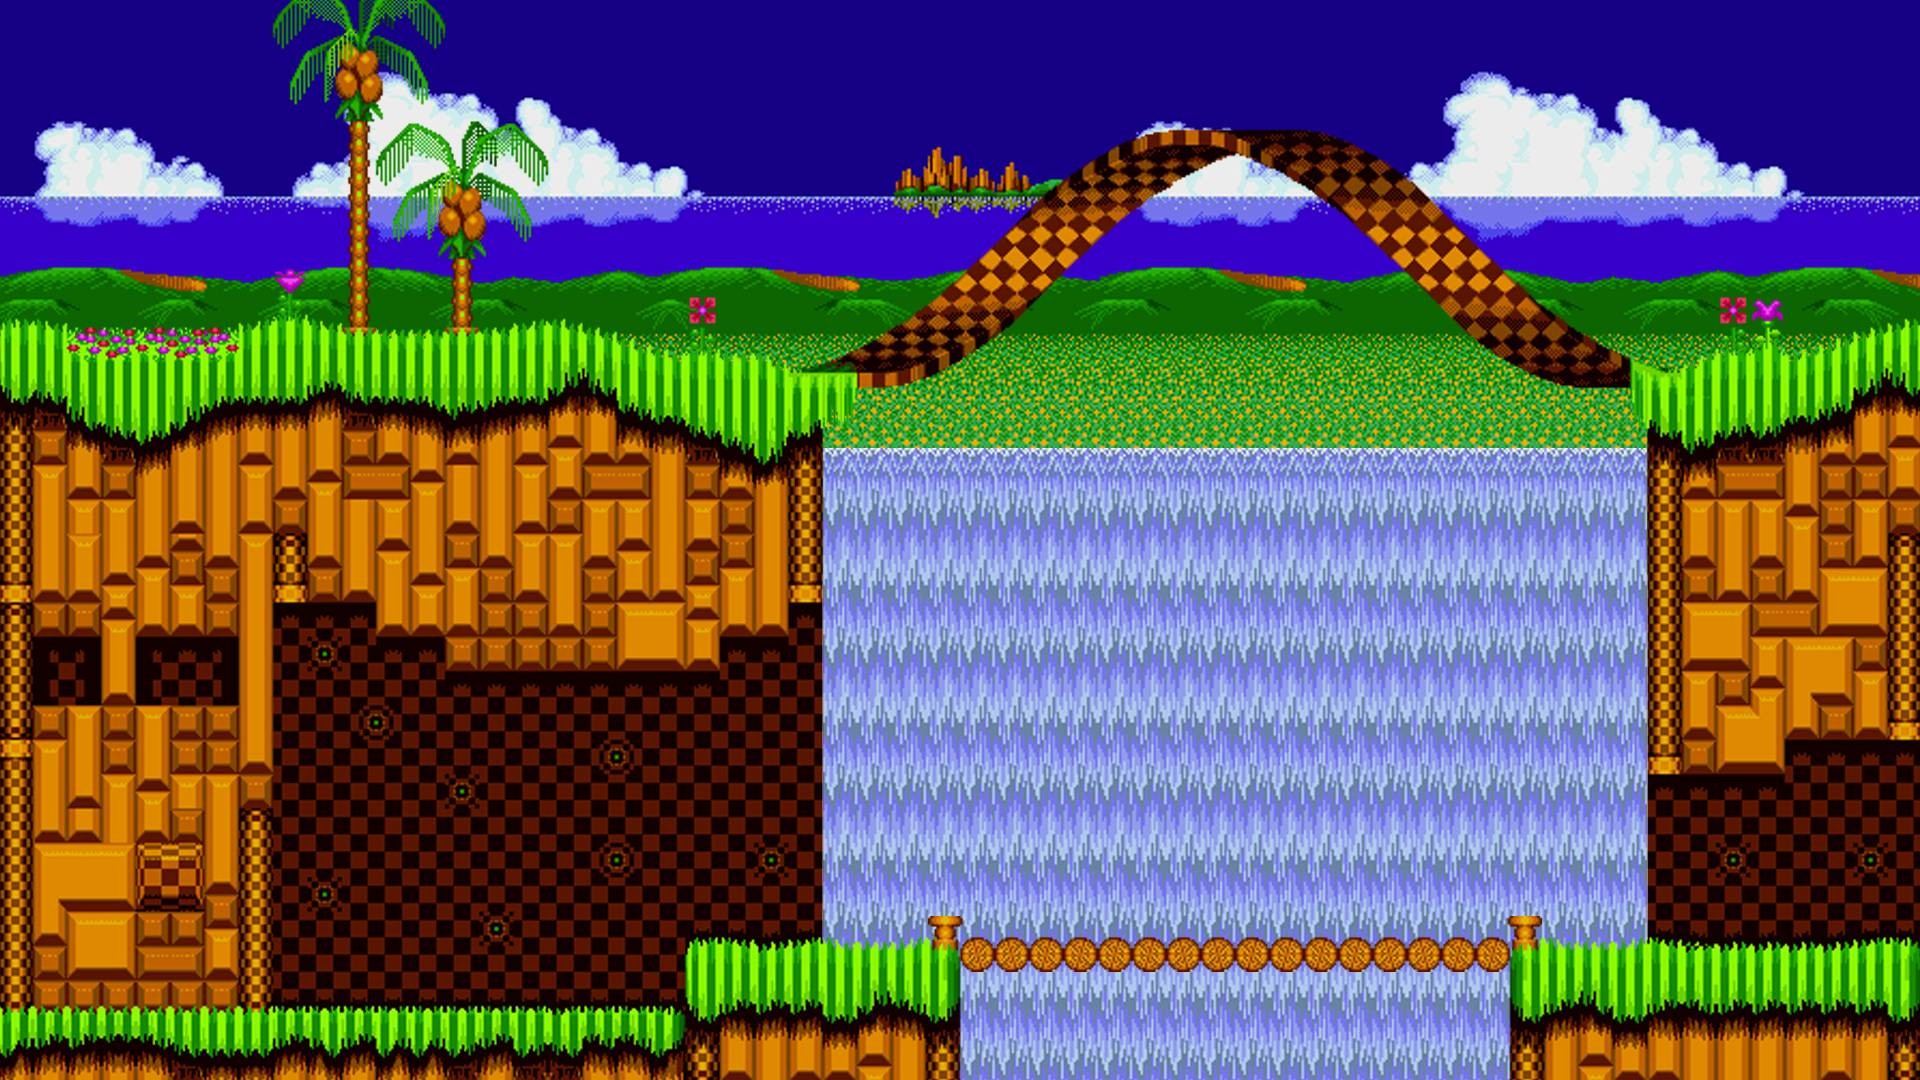 Hình nền Sonic là sự kết hợp tuyệt vời giữa nghệ thuật Mỹ thuật và nhân vật phim hoạt hình đầy màu sắc. Hãy chiêm ngưỡng những mẫu hình nền Sonic đẹp mắt trong hình ảnh này và làm nền cho máy tính hay điện thoại của bạn trở nên thú vị hơn bao giờ hết.